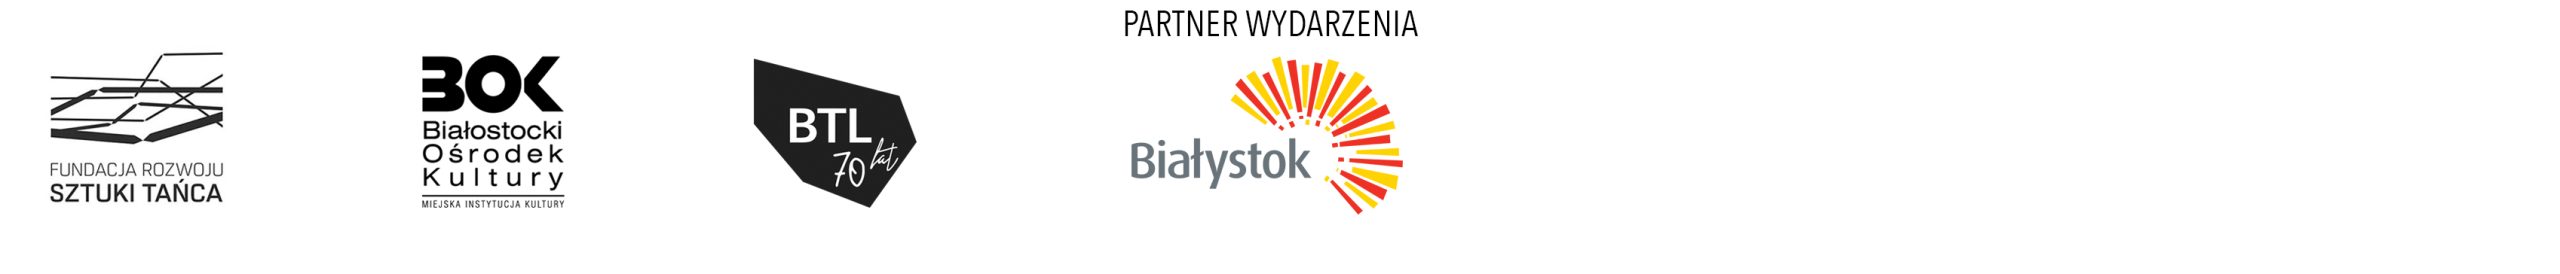 PS_belka-operatorow+bialystok_popr